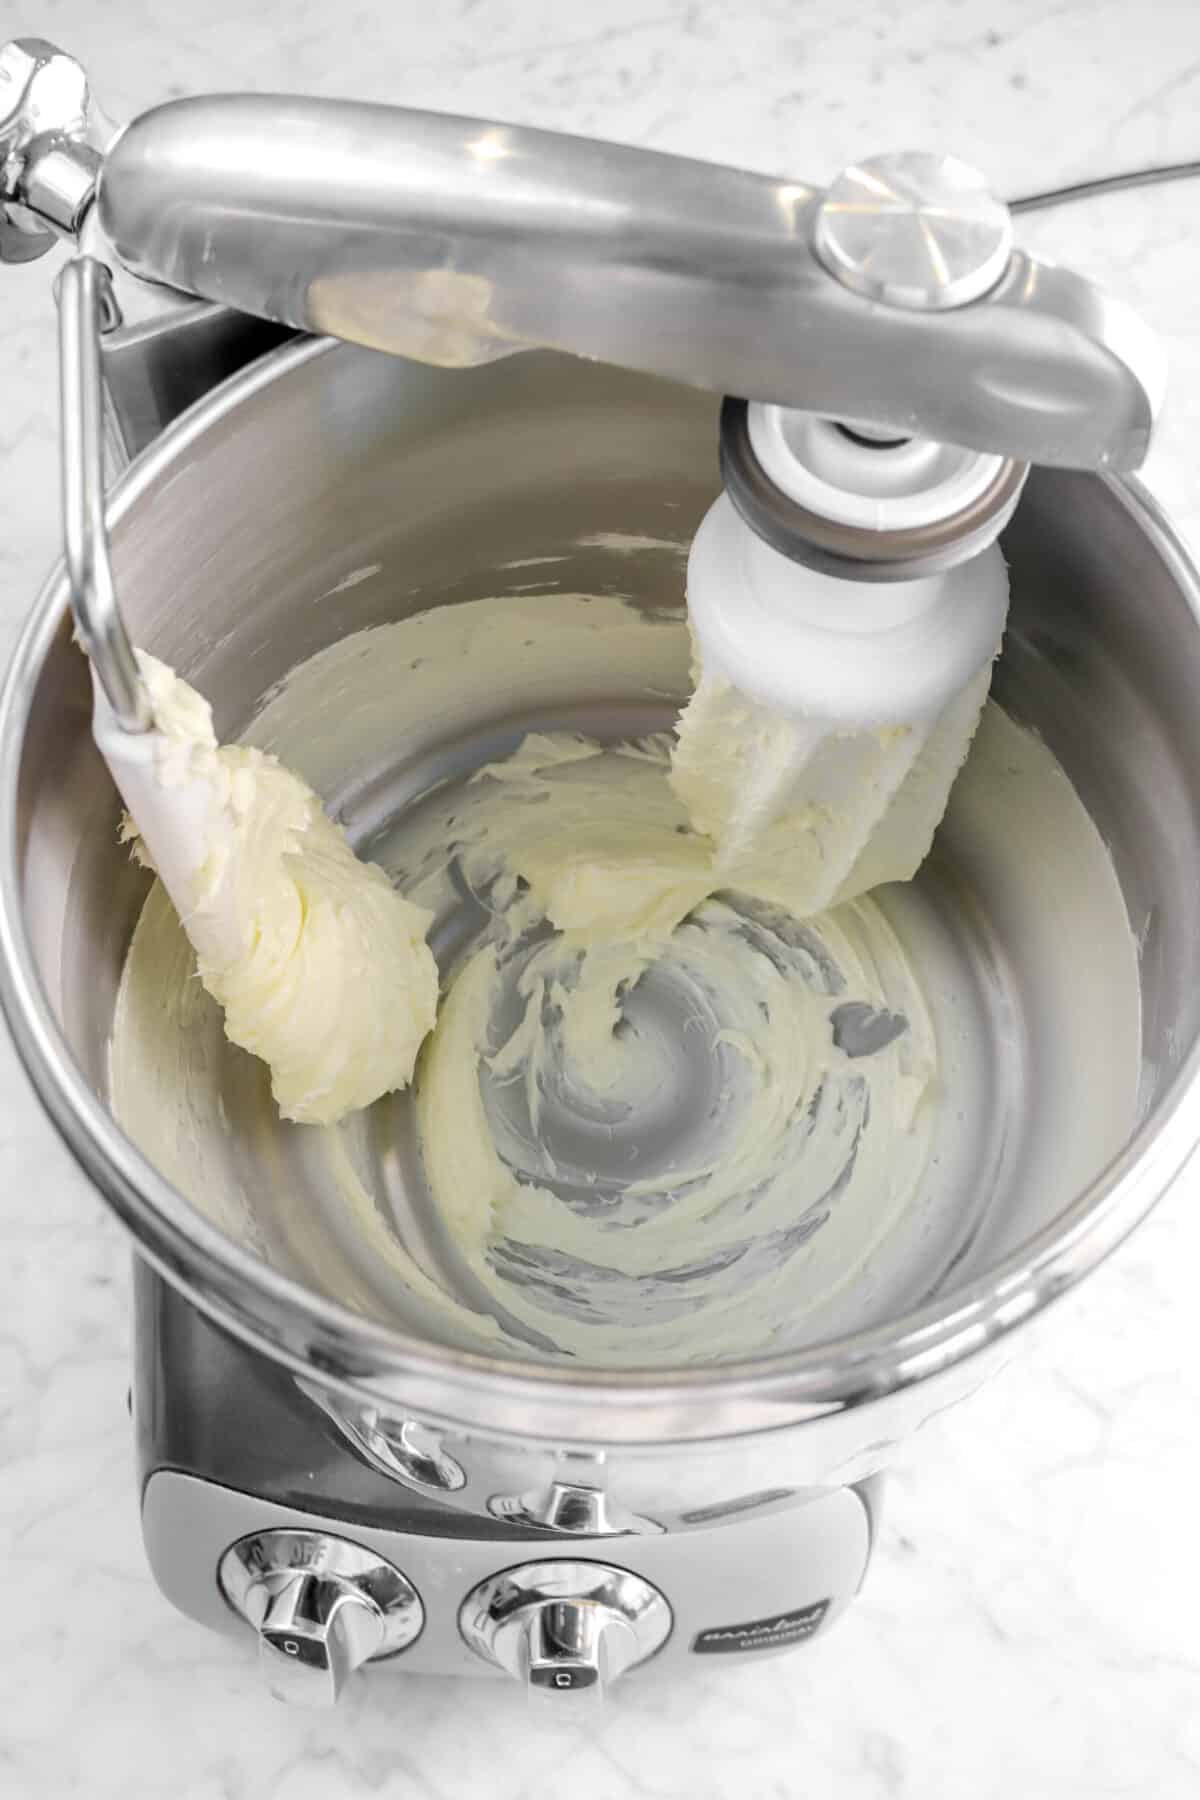 butter beaten in a mixer